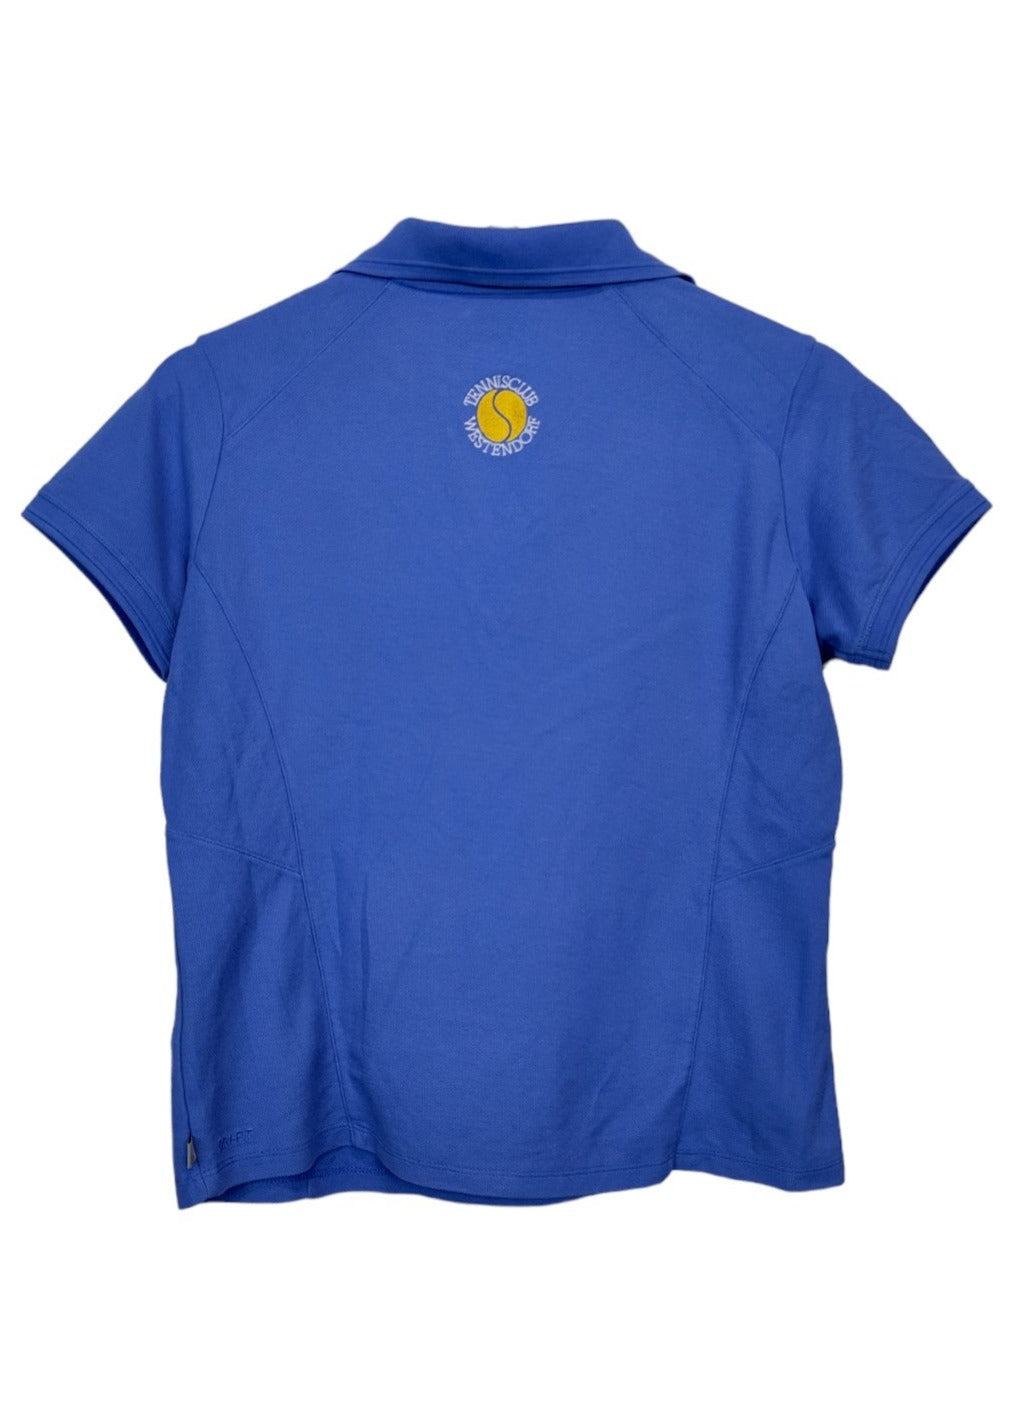 Γυναικεία Μπλούζα - T-Shirt NIKE σε Γαλάζιο Χρώμα (Medium)